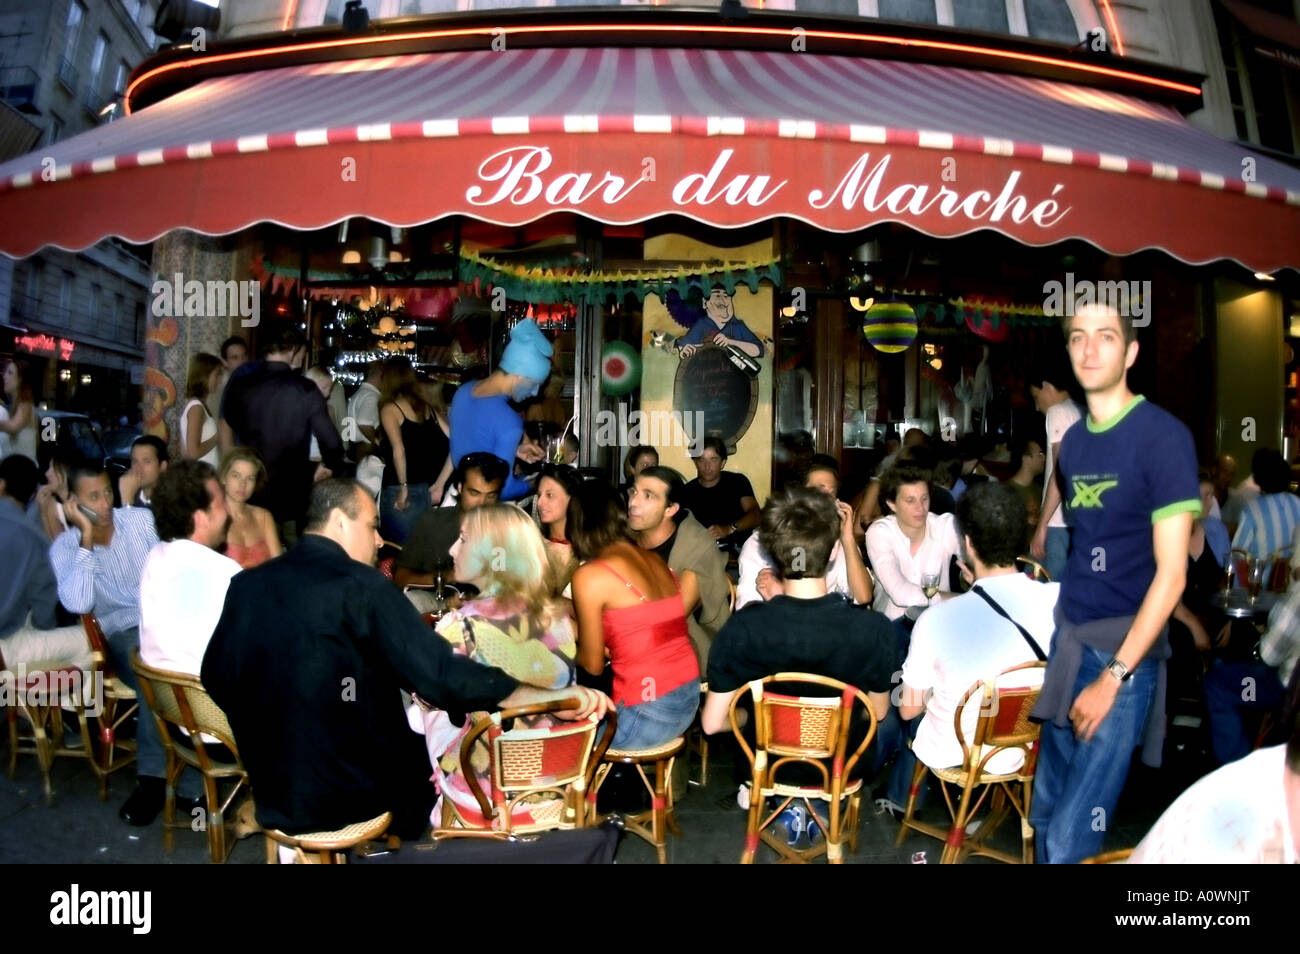 PARIS, Frankreich, Menschenmenge Getränke auf der Bürgersteig-Terrasse Paris French Café Bar Bistro Restaurant im Quartier Latin 'Bar de Marché' Stockfoto